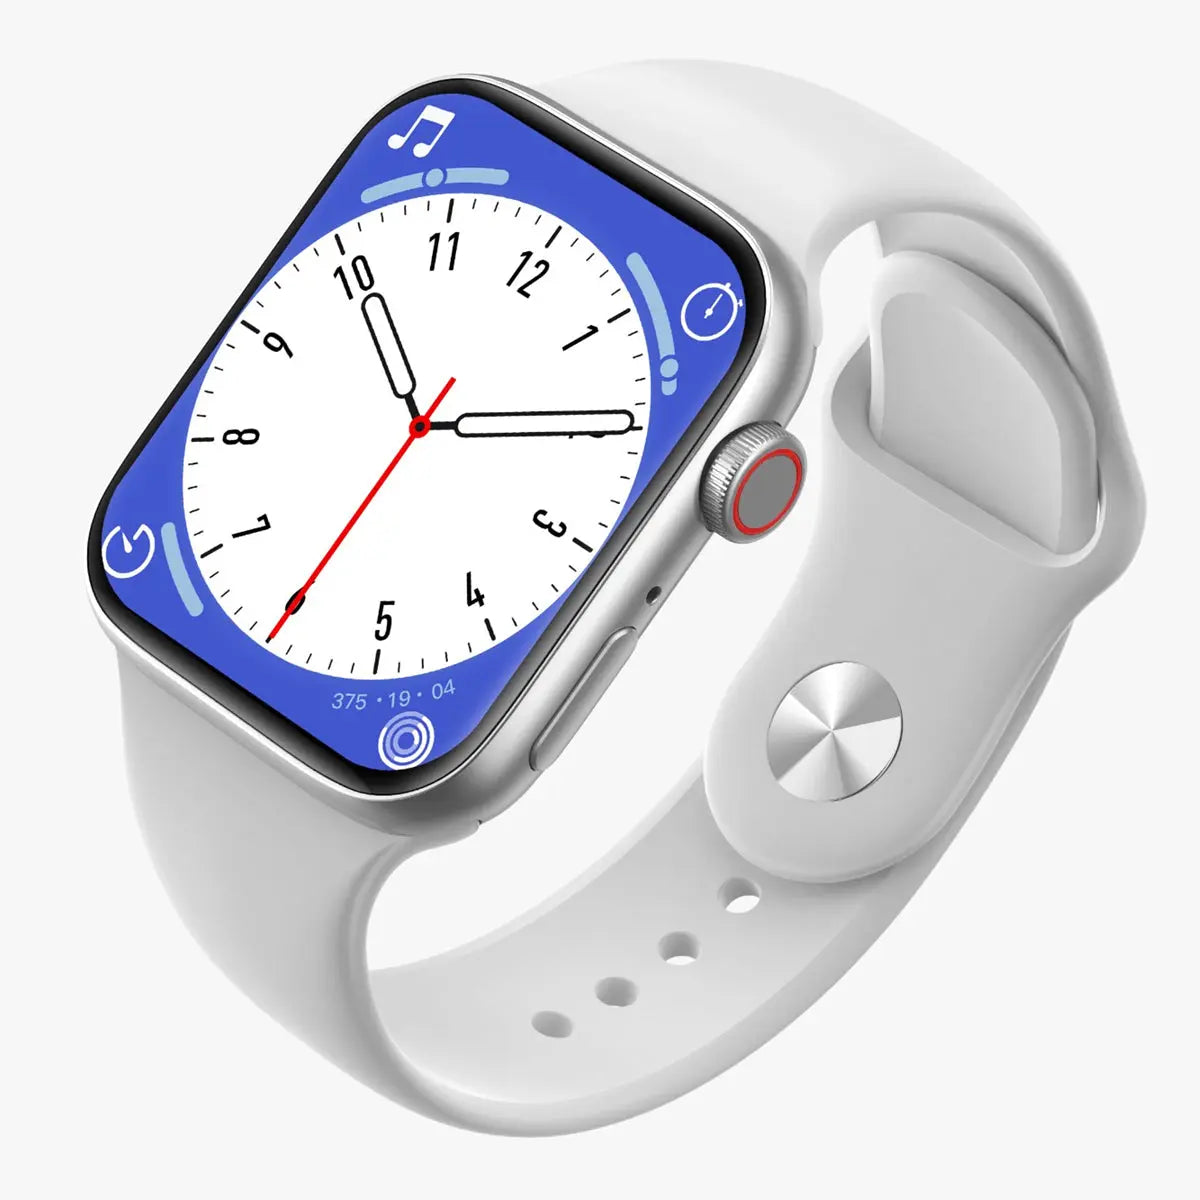 Smartwatch Reloj T900 Suit Fralugio 2 Correas Notificaciones